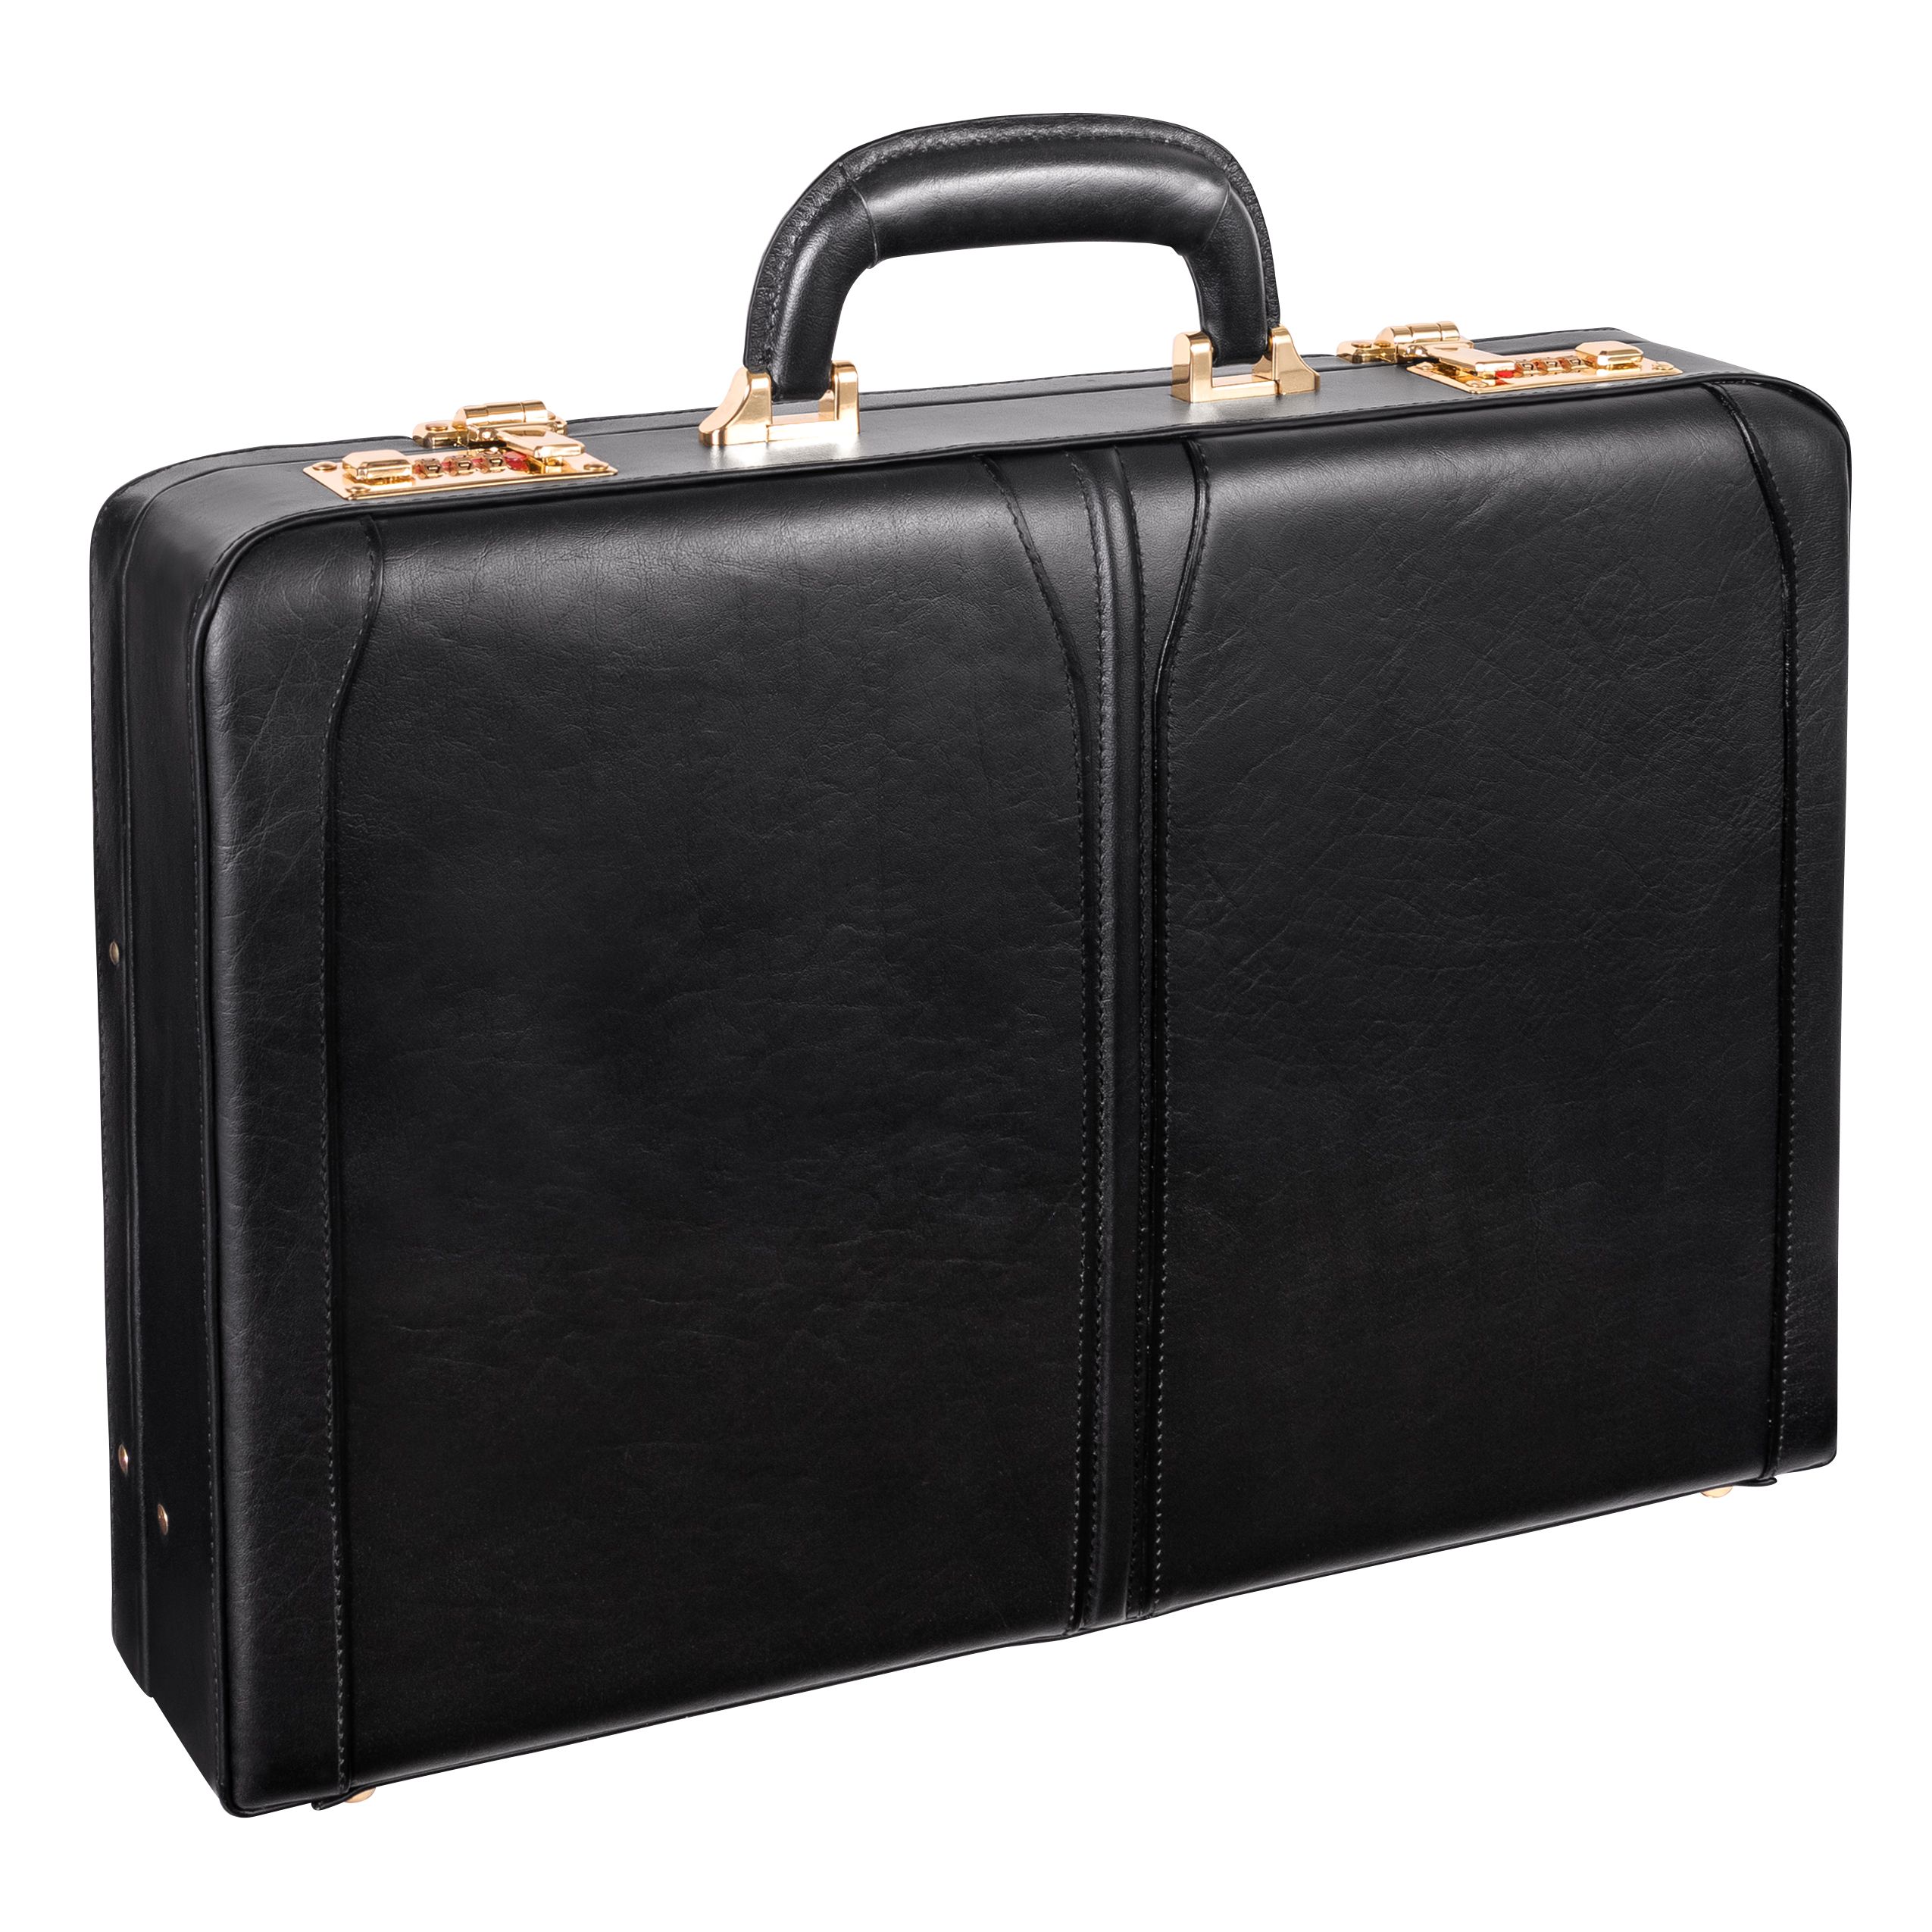 Lawson - Black Leather Attache Case